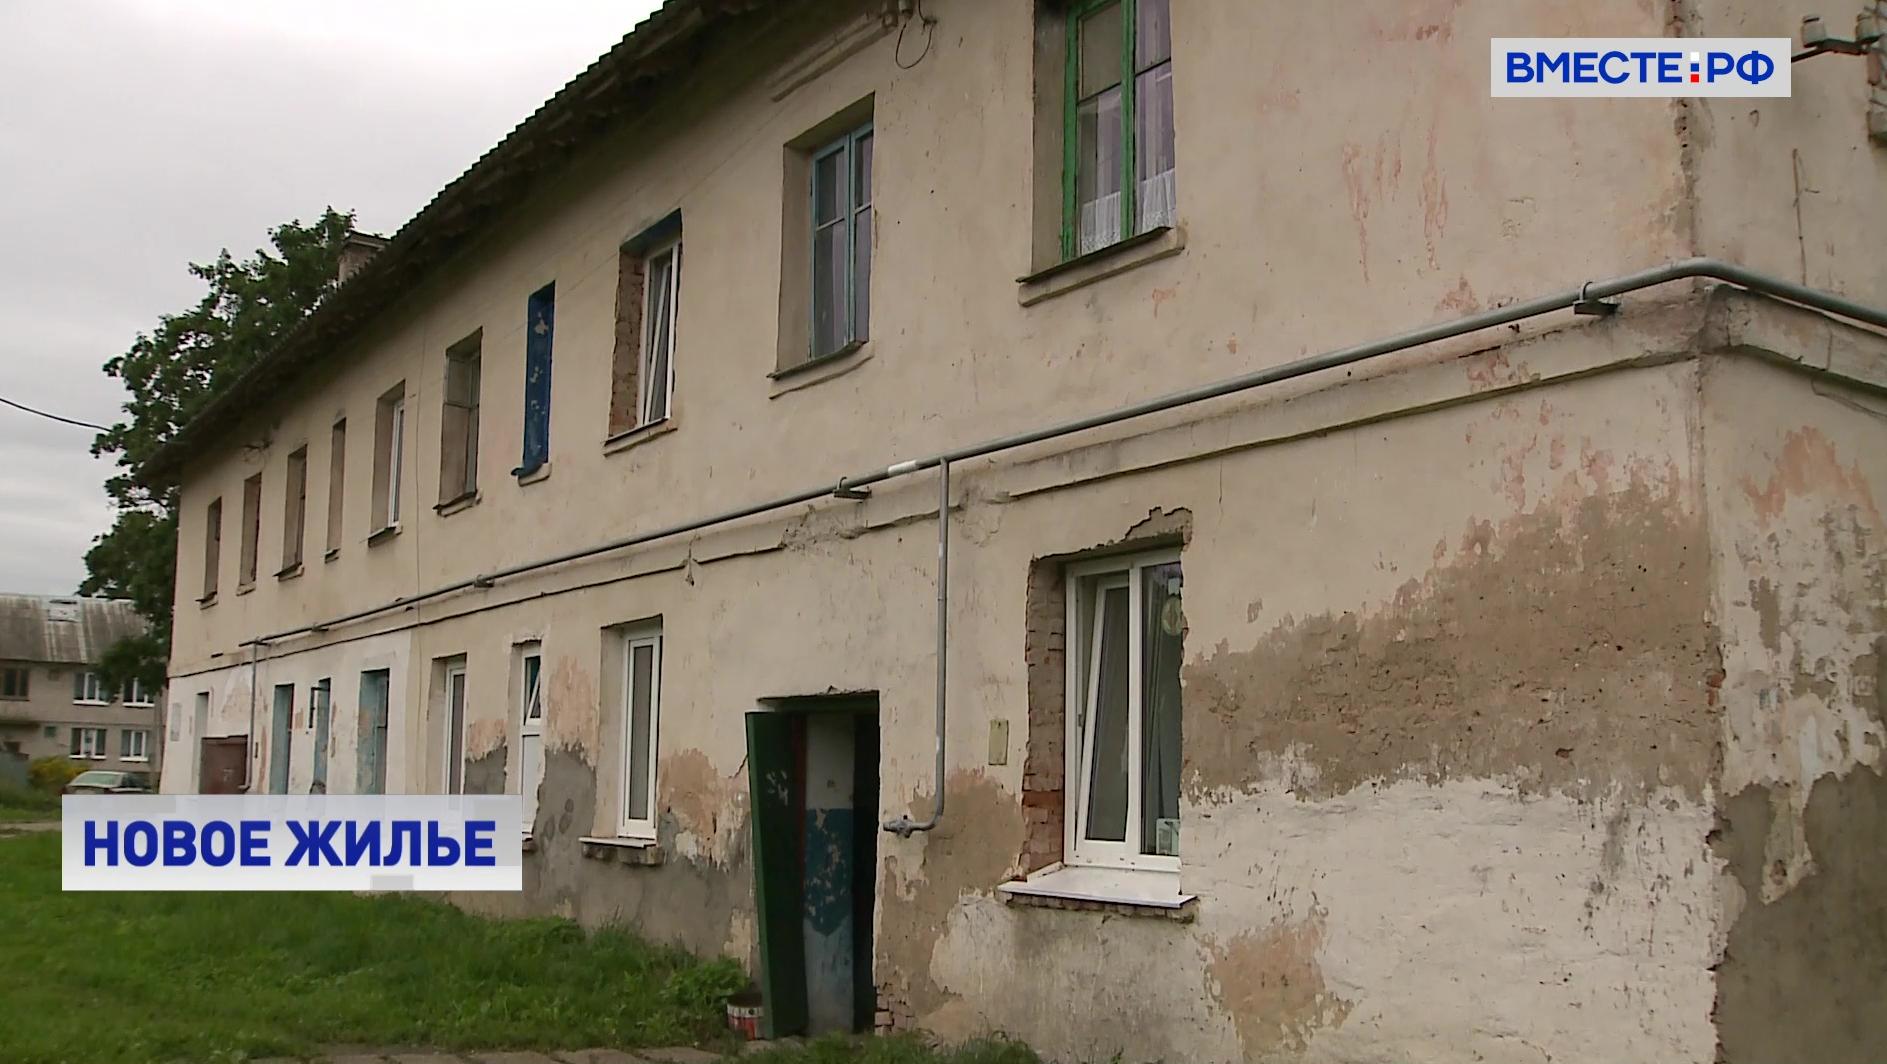 Необходимо решить проблему с жильем для тружеников БАМа, заявил сенатор Наговицын